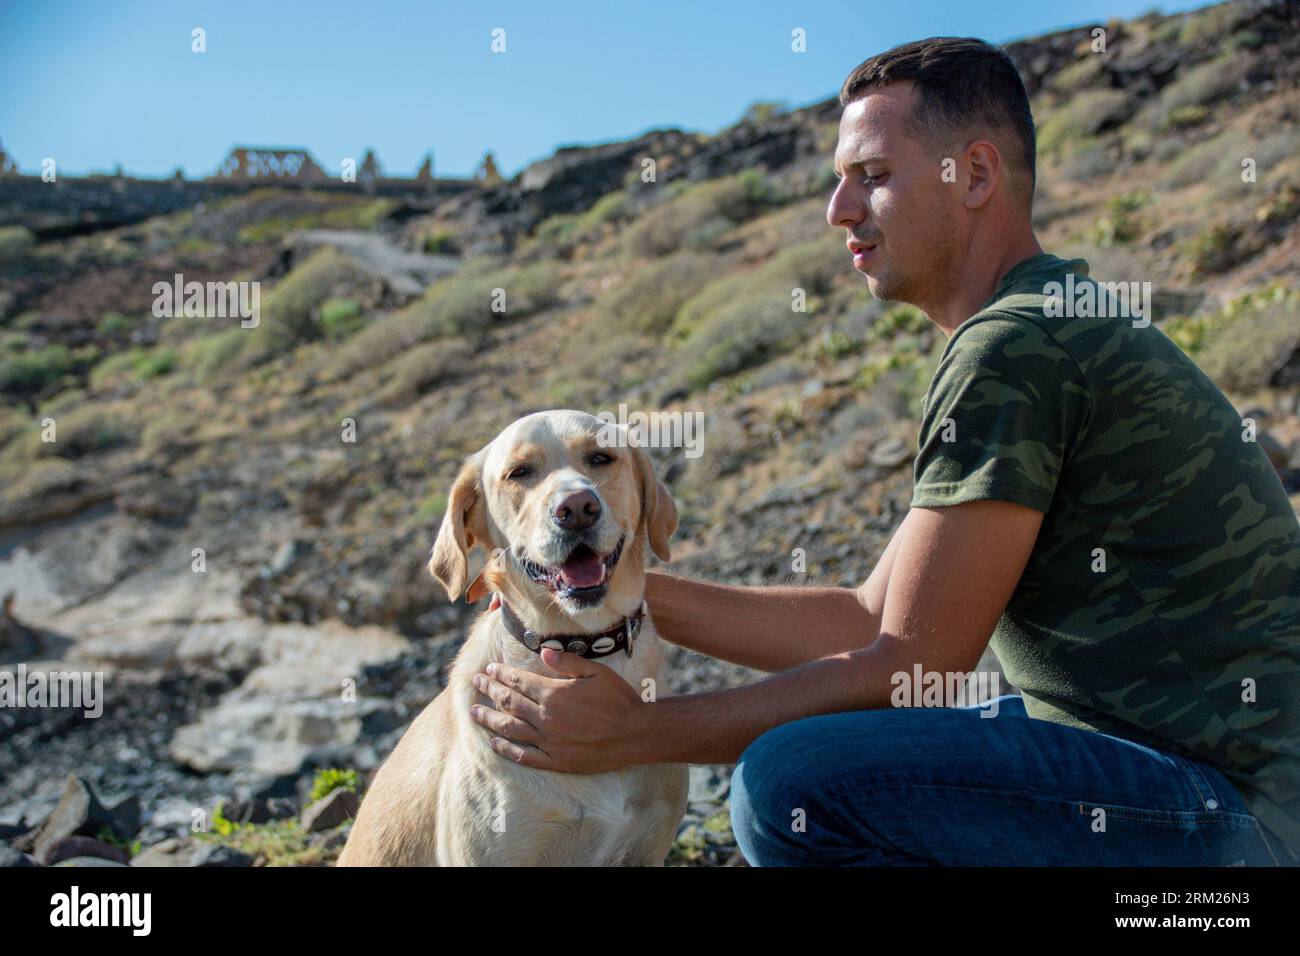 El entrenador de perros caucásicos abraza al perro labrador después de una sesión de trabajo exitosa Foto de stock